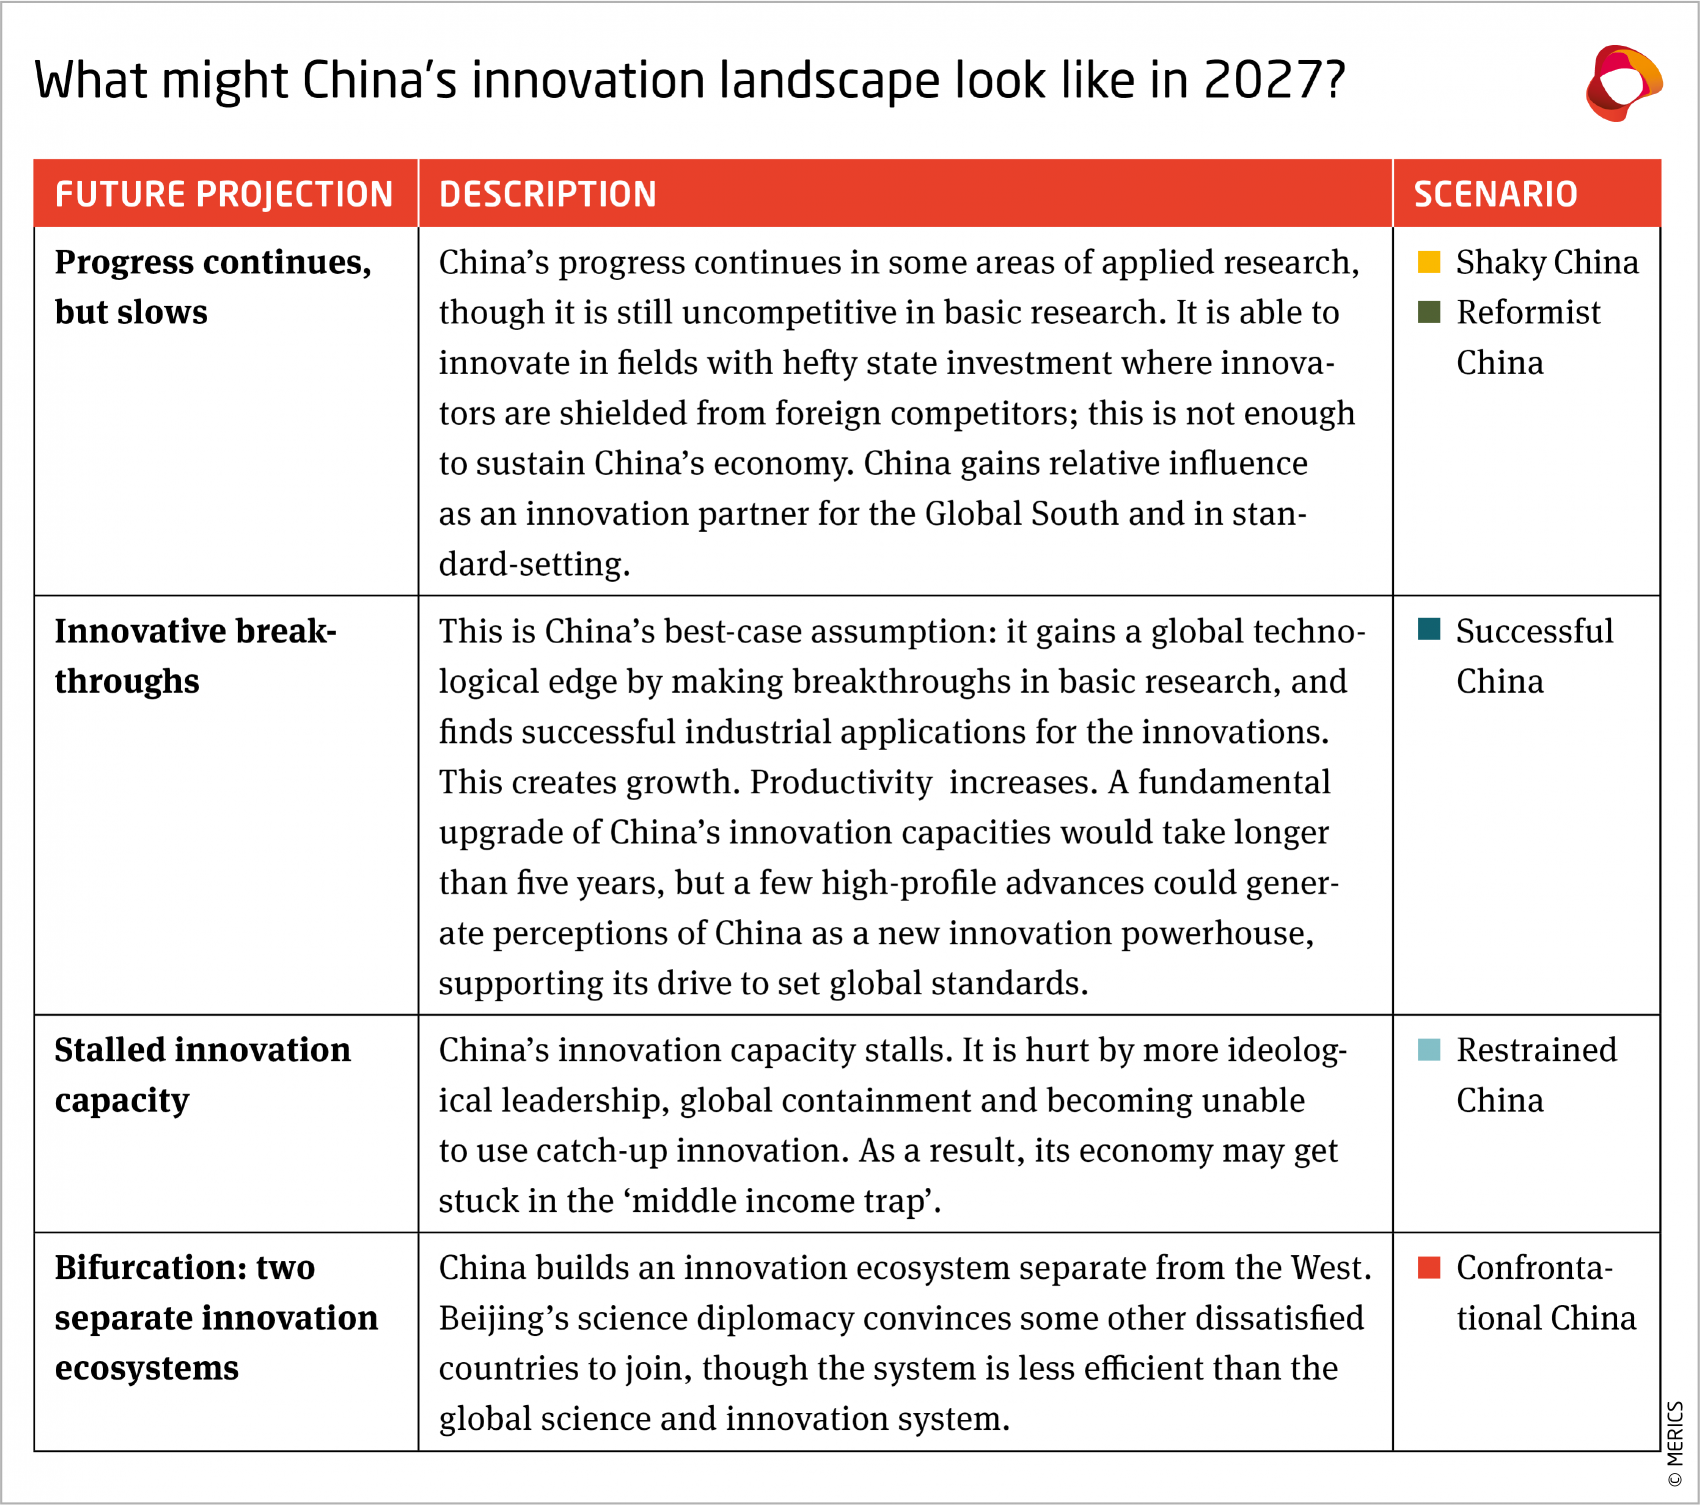 China's innovation capacity in 2027